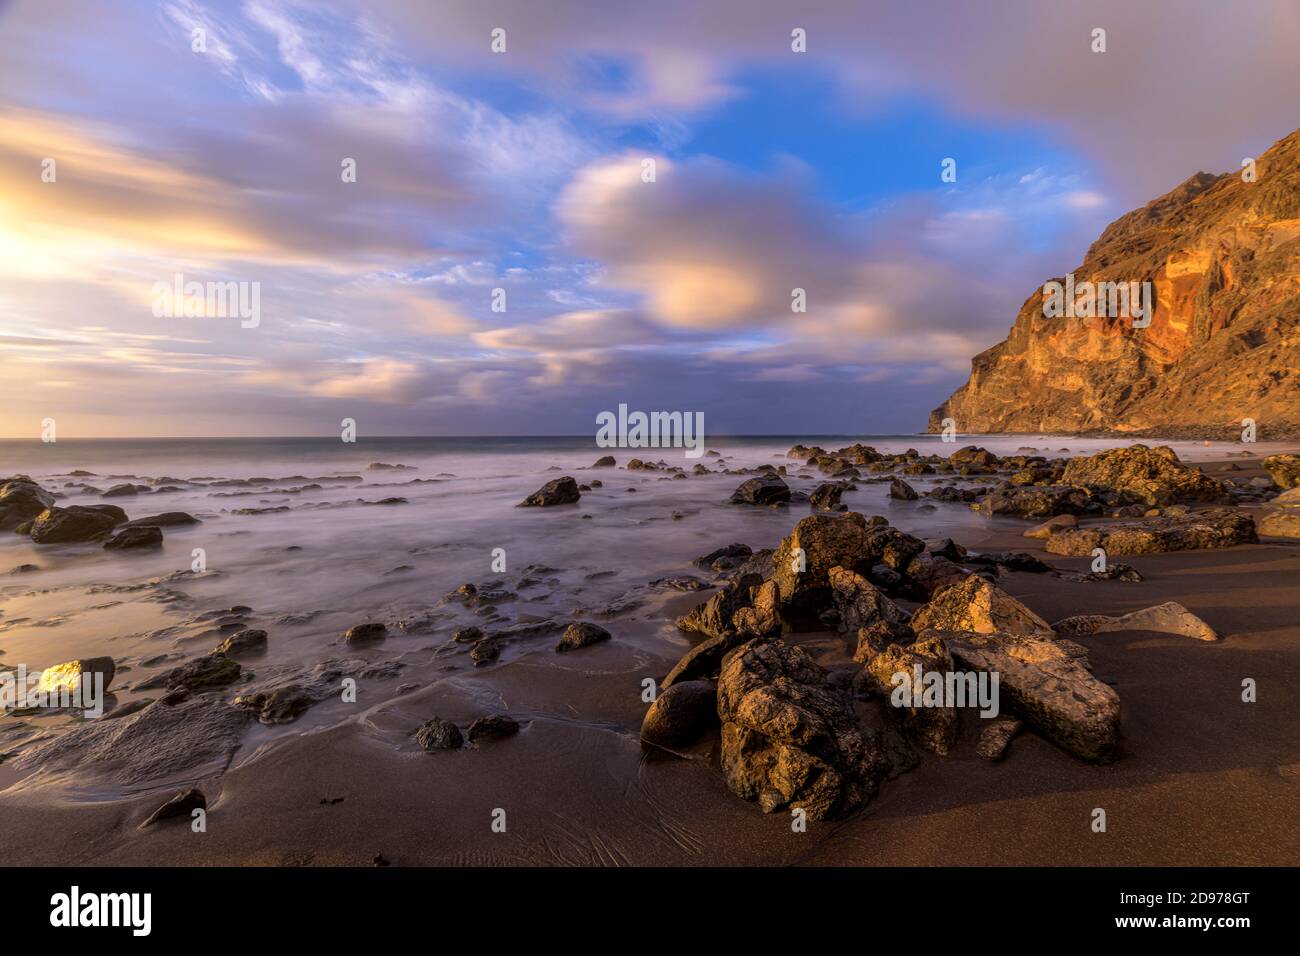 Playa del Ingles, Valle Gran Rey, La Gomera, Canary Islands Stock Photo